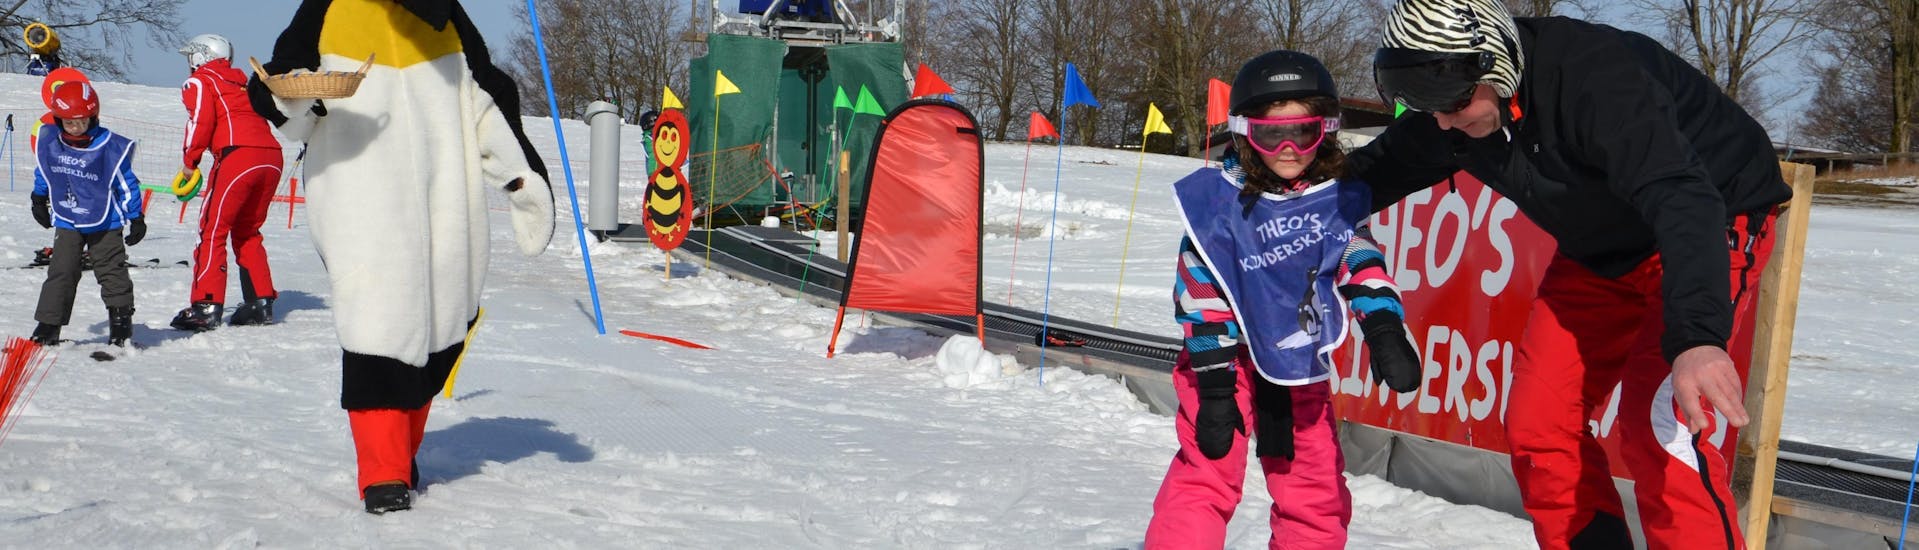 Lezioni private di sci per bambini a partire da 5 anni con esperienza.